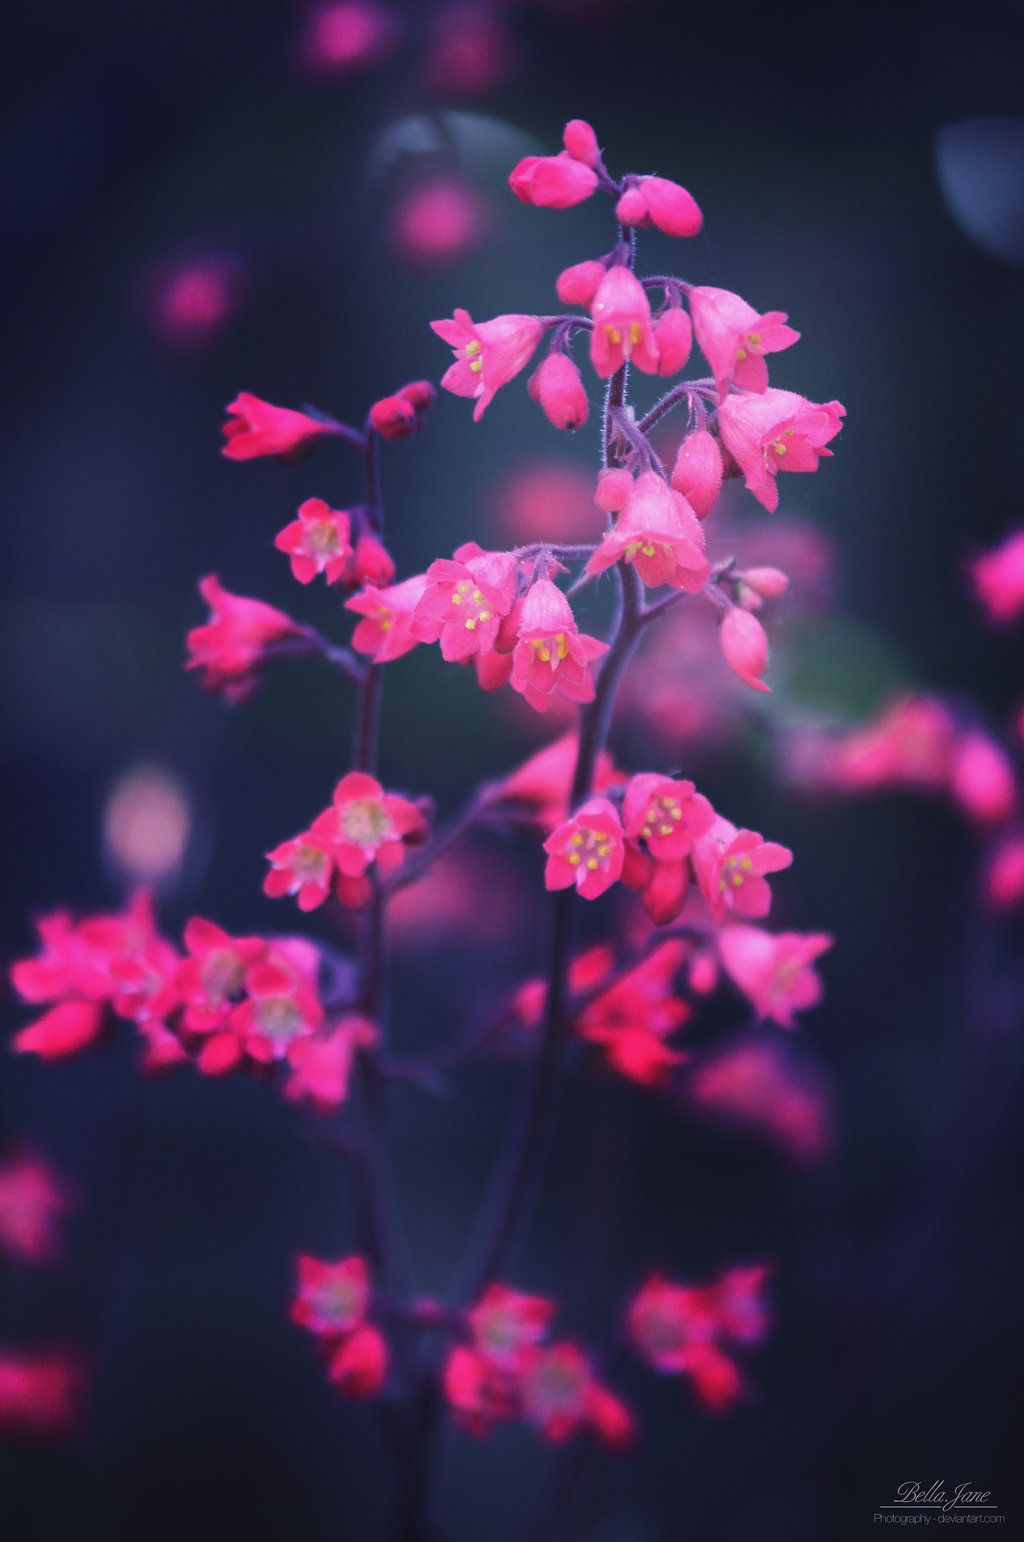 Blurred Flower Background